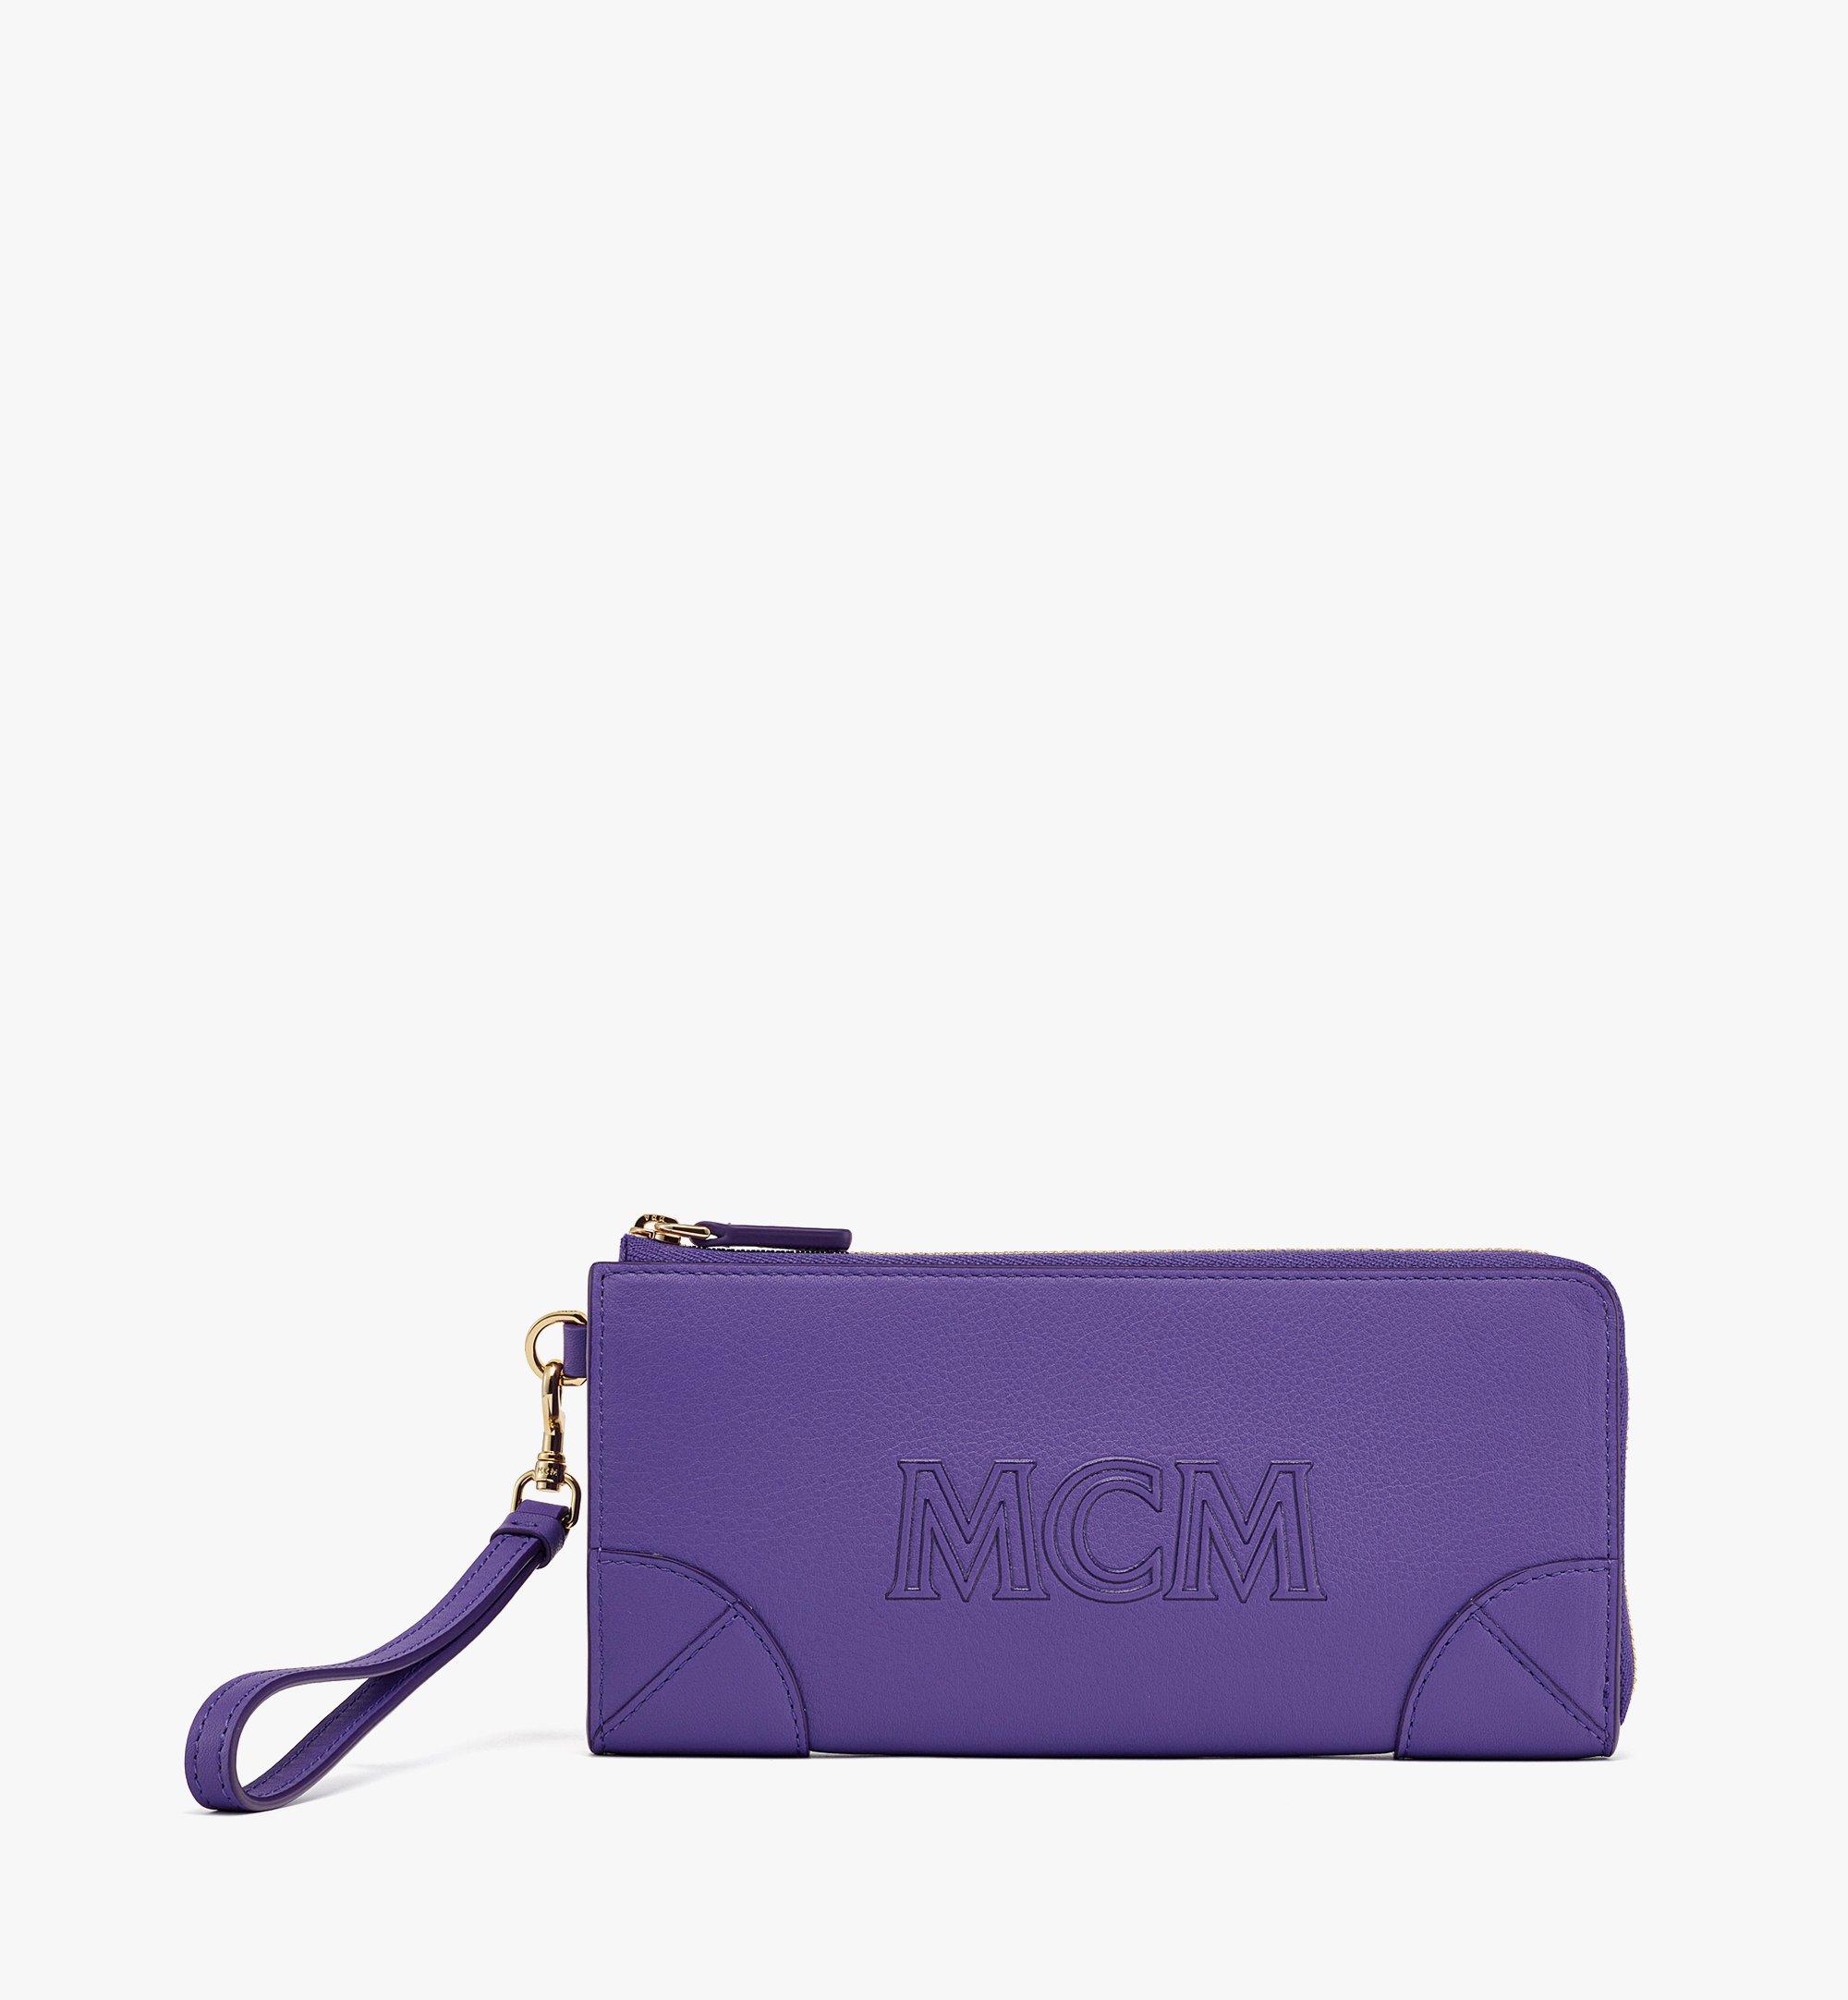 MCM Aren Zip Around Wallet in Spanish Calf Leather Purple MYLDATA04UQ001 Alternate View 1